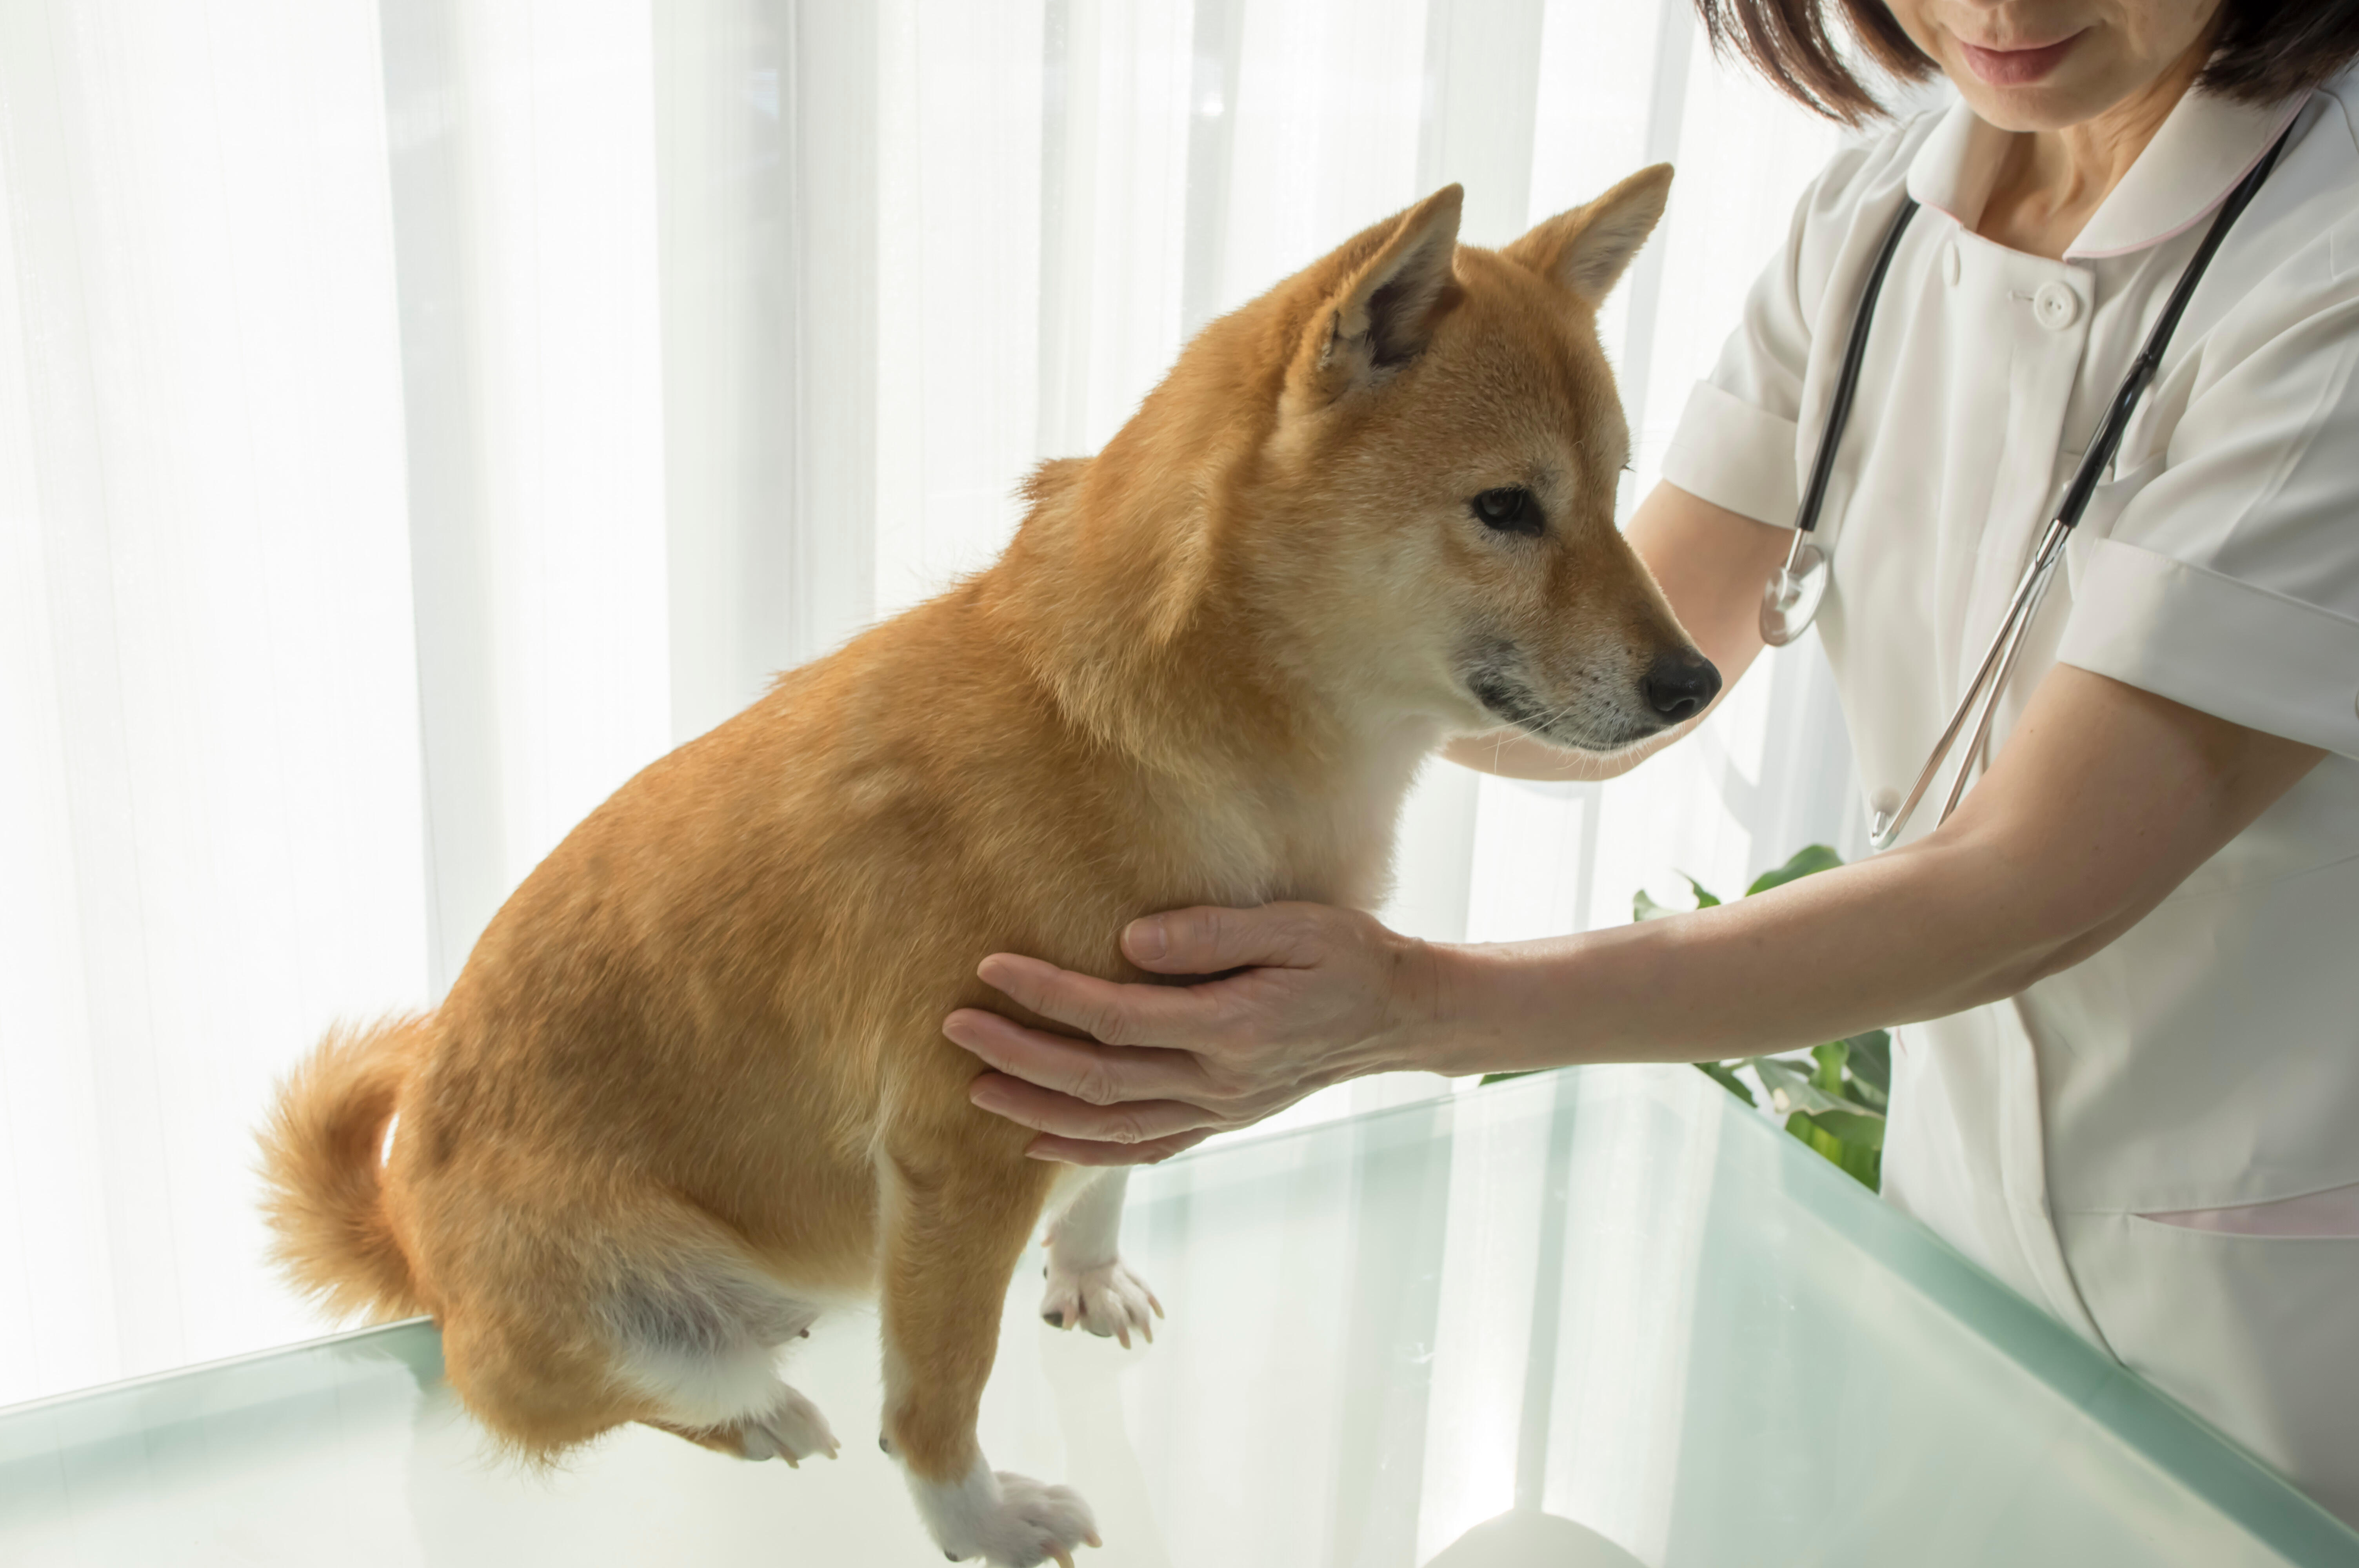 犬が食べてはいけないものを食べたとき動物病院で行われる処置